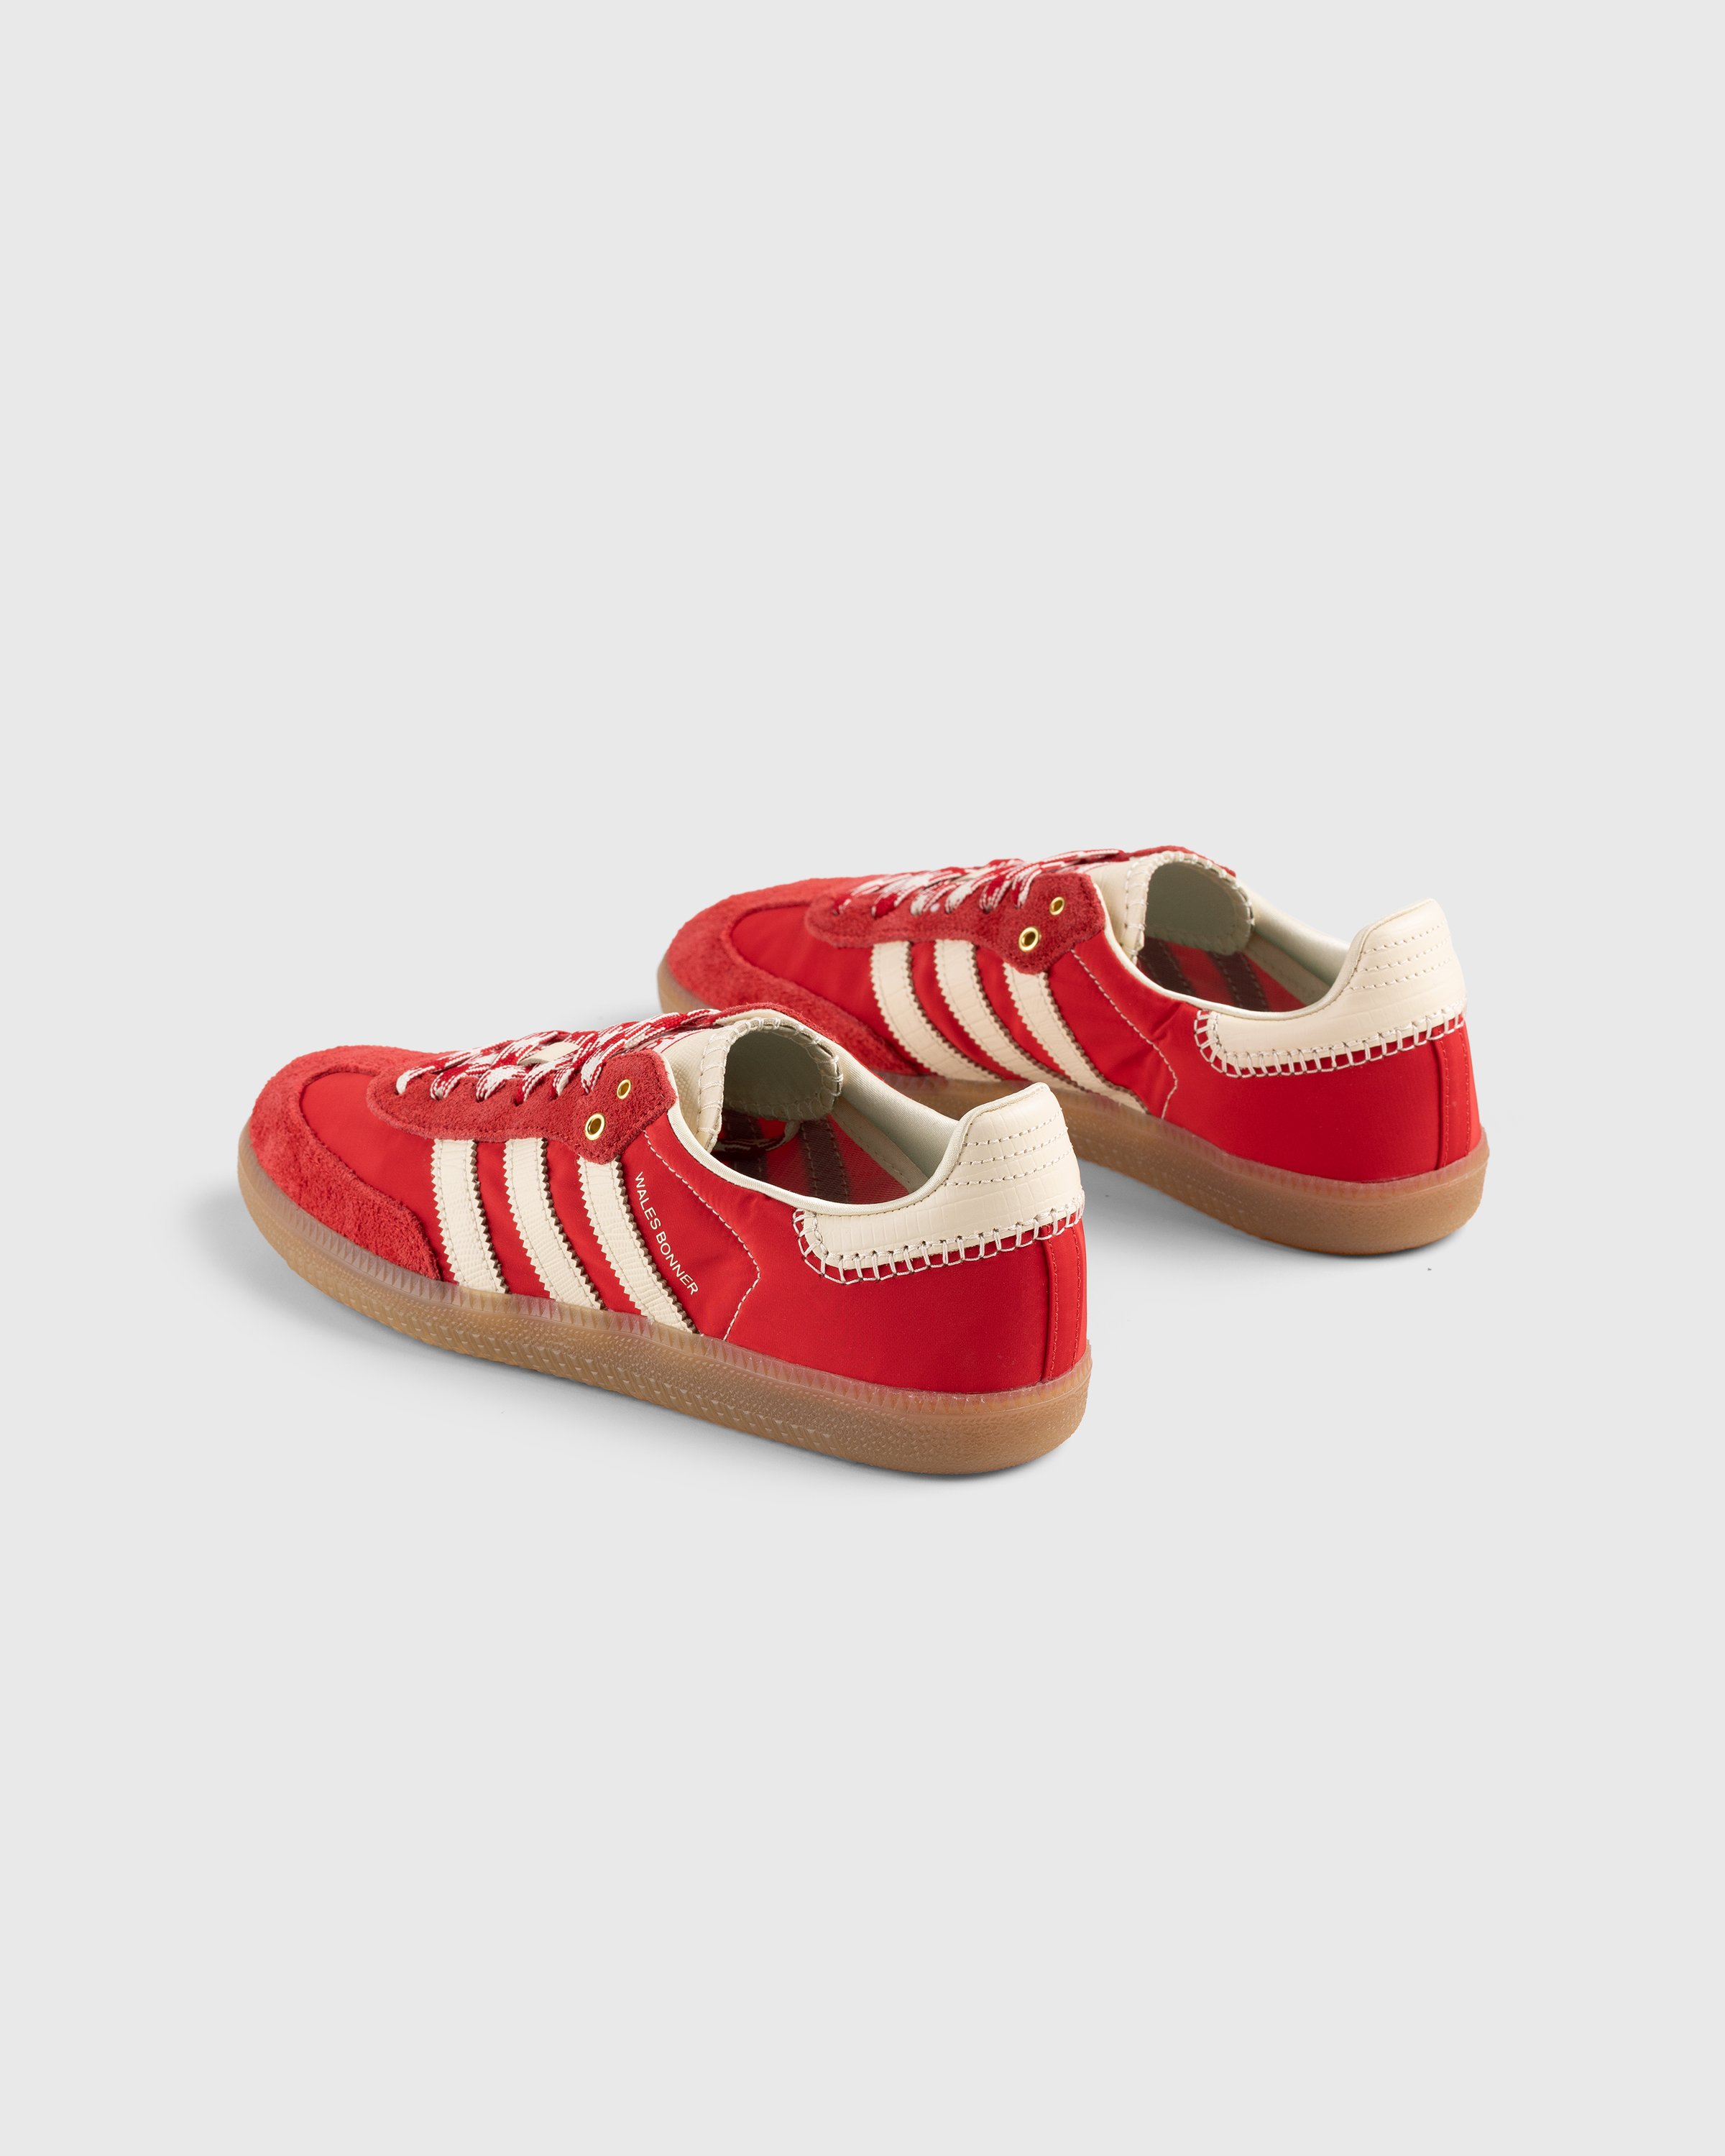 Adidas x Wales Bonner - WB Samba Scarlet/Ecru Tint/Scarlet - Footwear - Red - Image 3